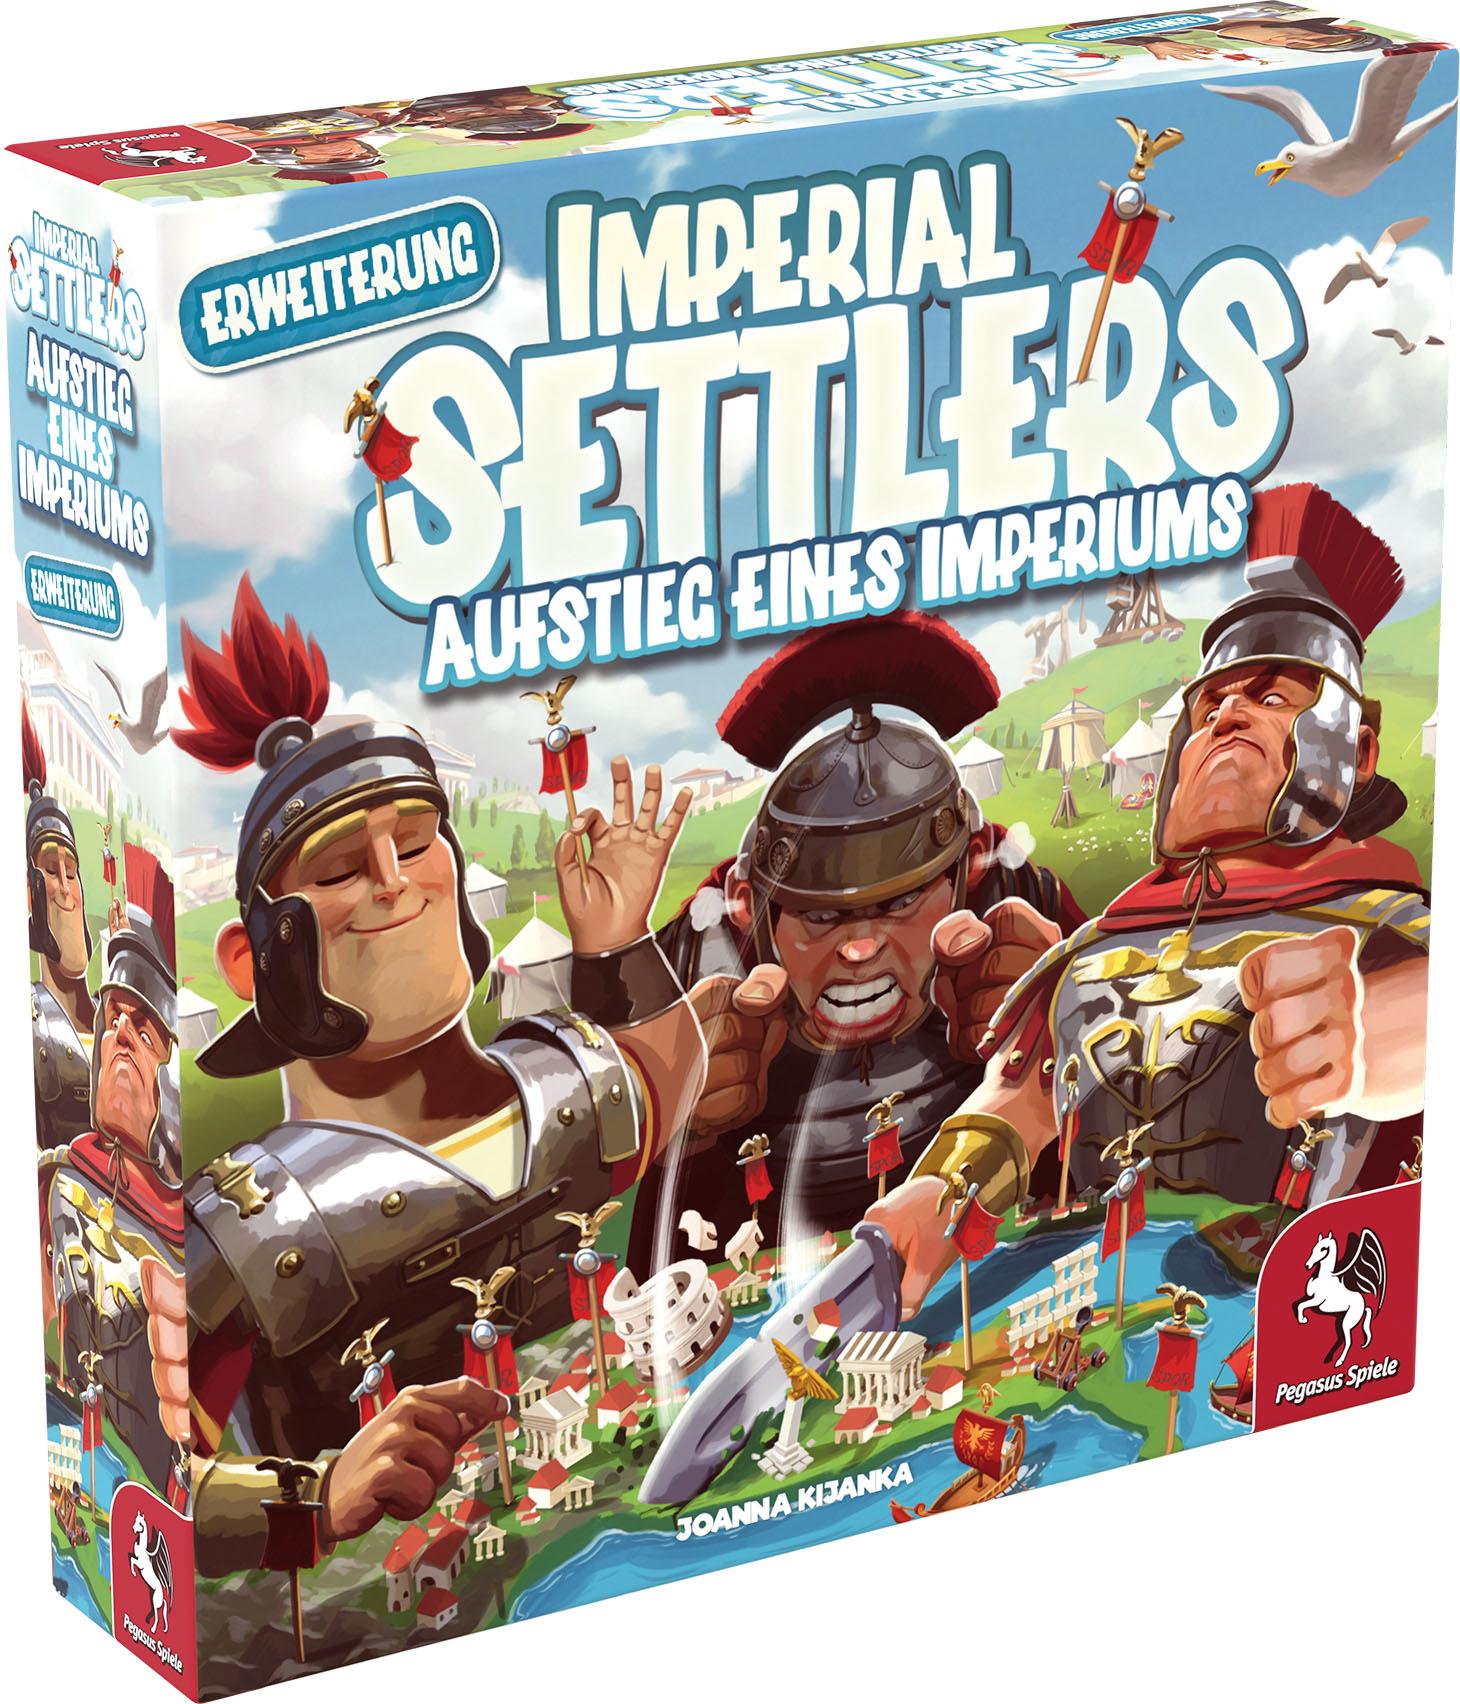 Imperial Settlers - Aufstieg eines Imperiums: Erweiterung